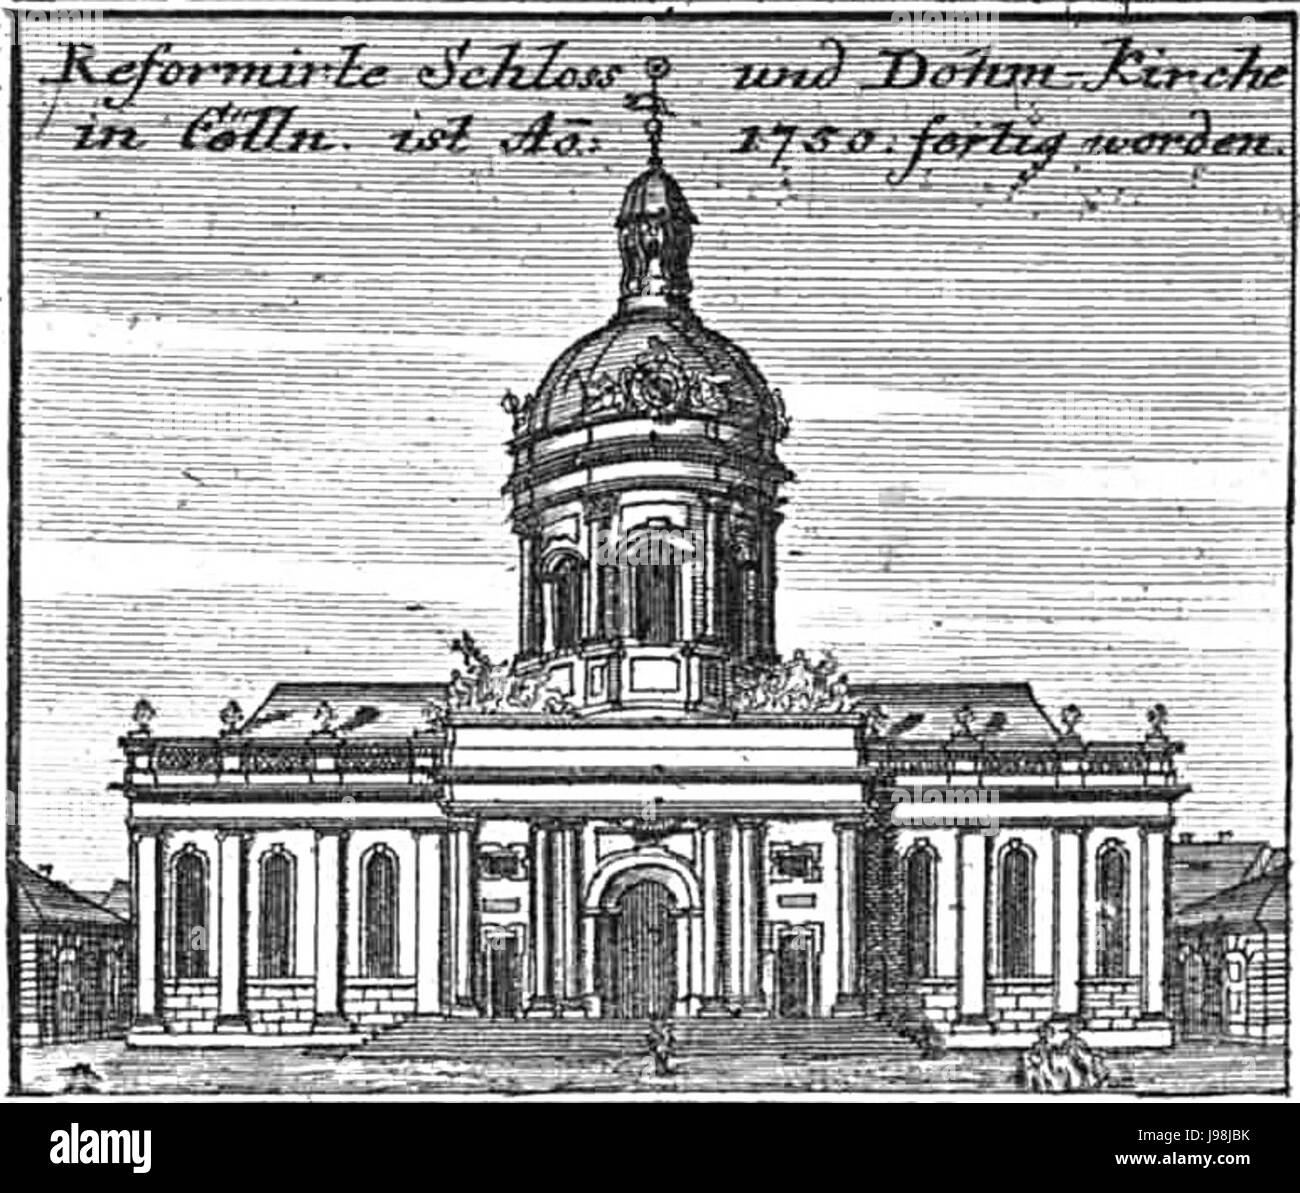 Schleuen Reformierte Schloss Und Kirche 1757 Dohm Stockfoto